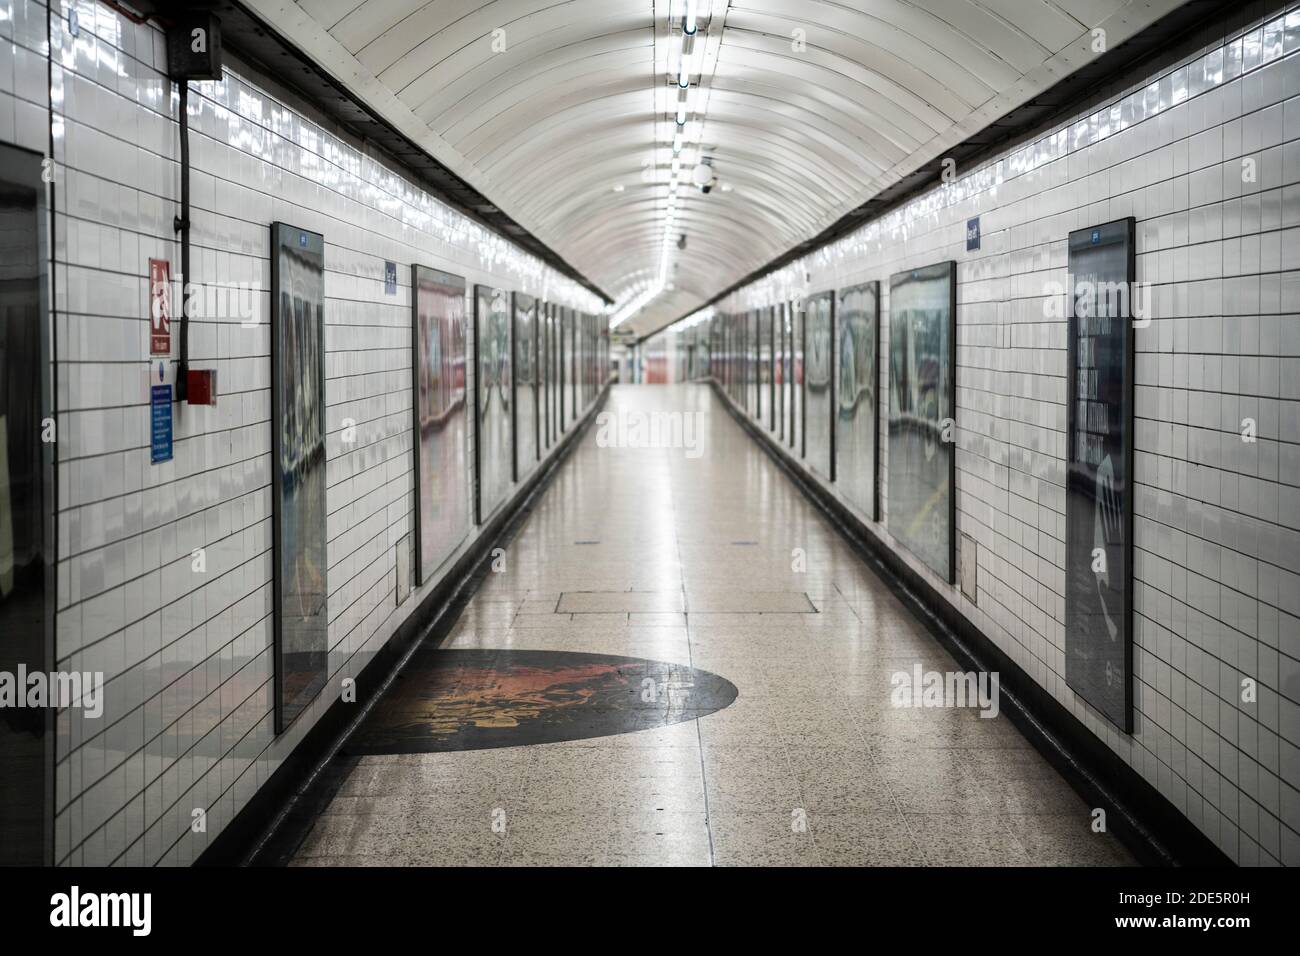 Ruhige, leere und verlassene Londoner U-Bahn-Station in Coronavirus Covid-19 Pandemiesperre, während öffentliche Verkehrsmittel und Züge wurden reduziert ohne Menschen während Reiseverbot Stockfoto